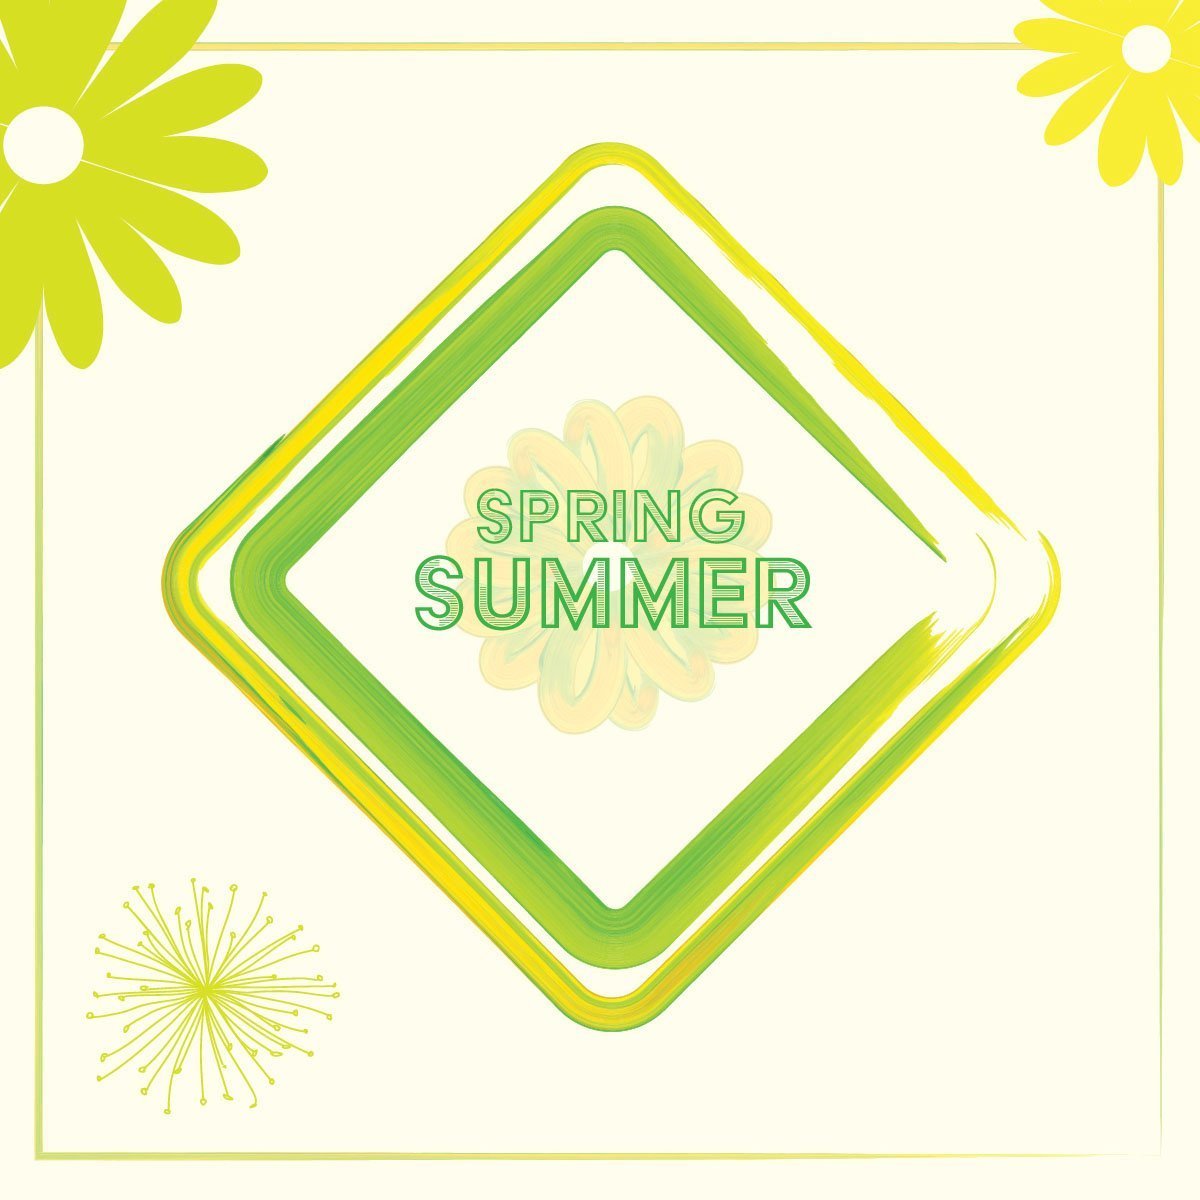 Spring Summer Poster Design